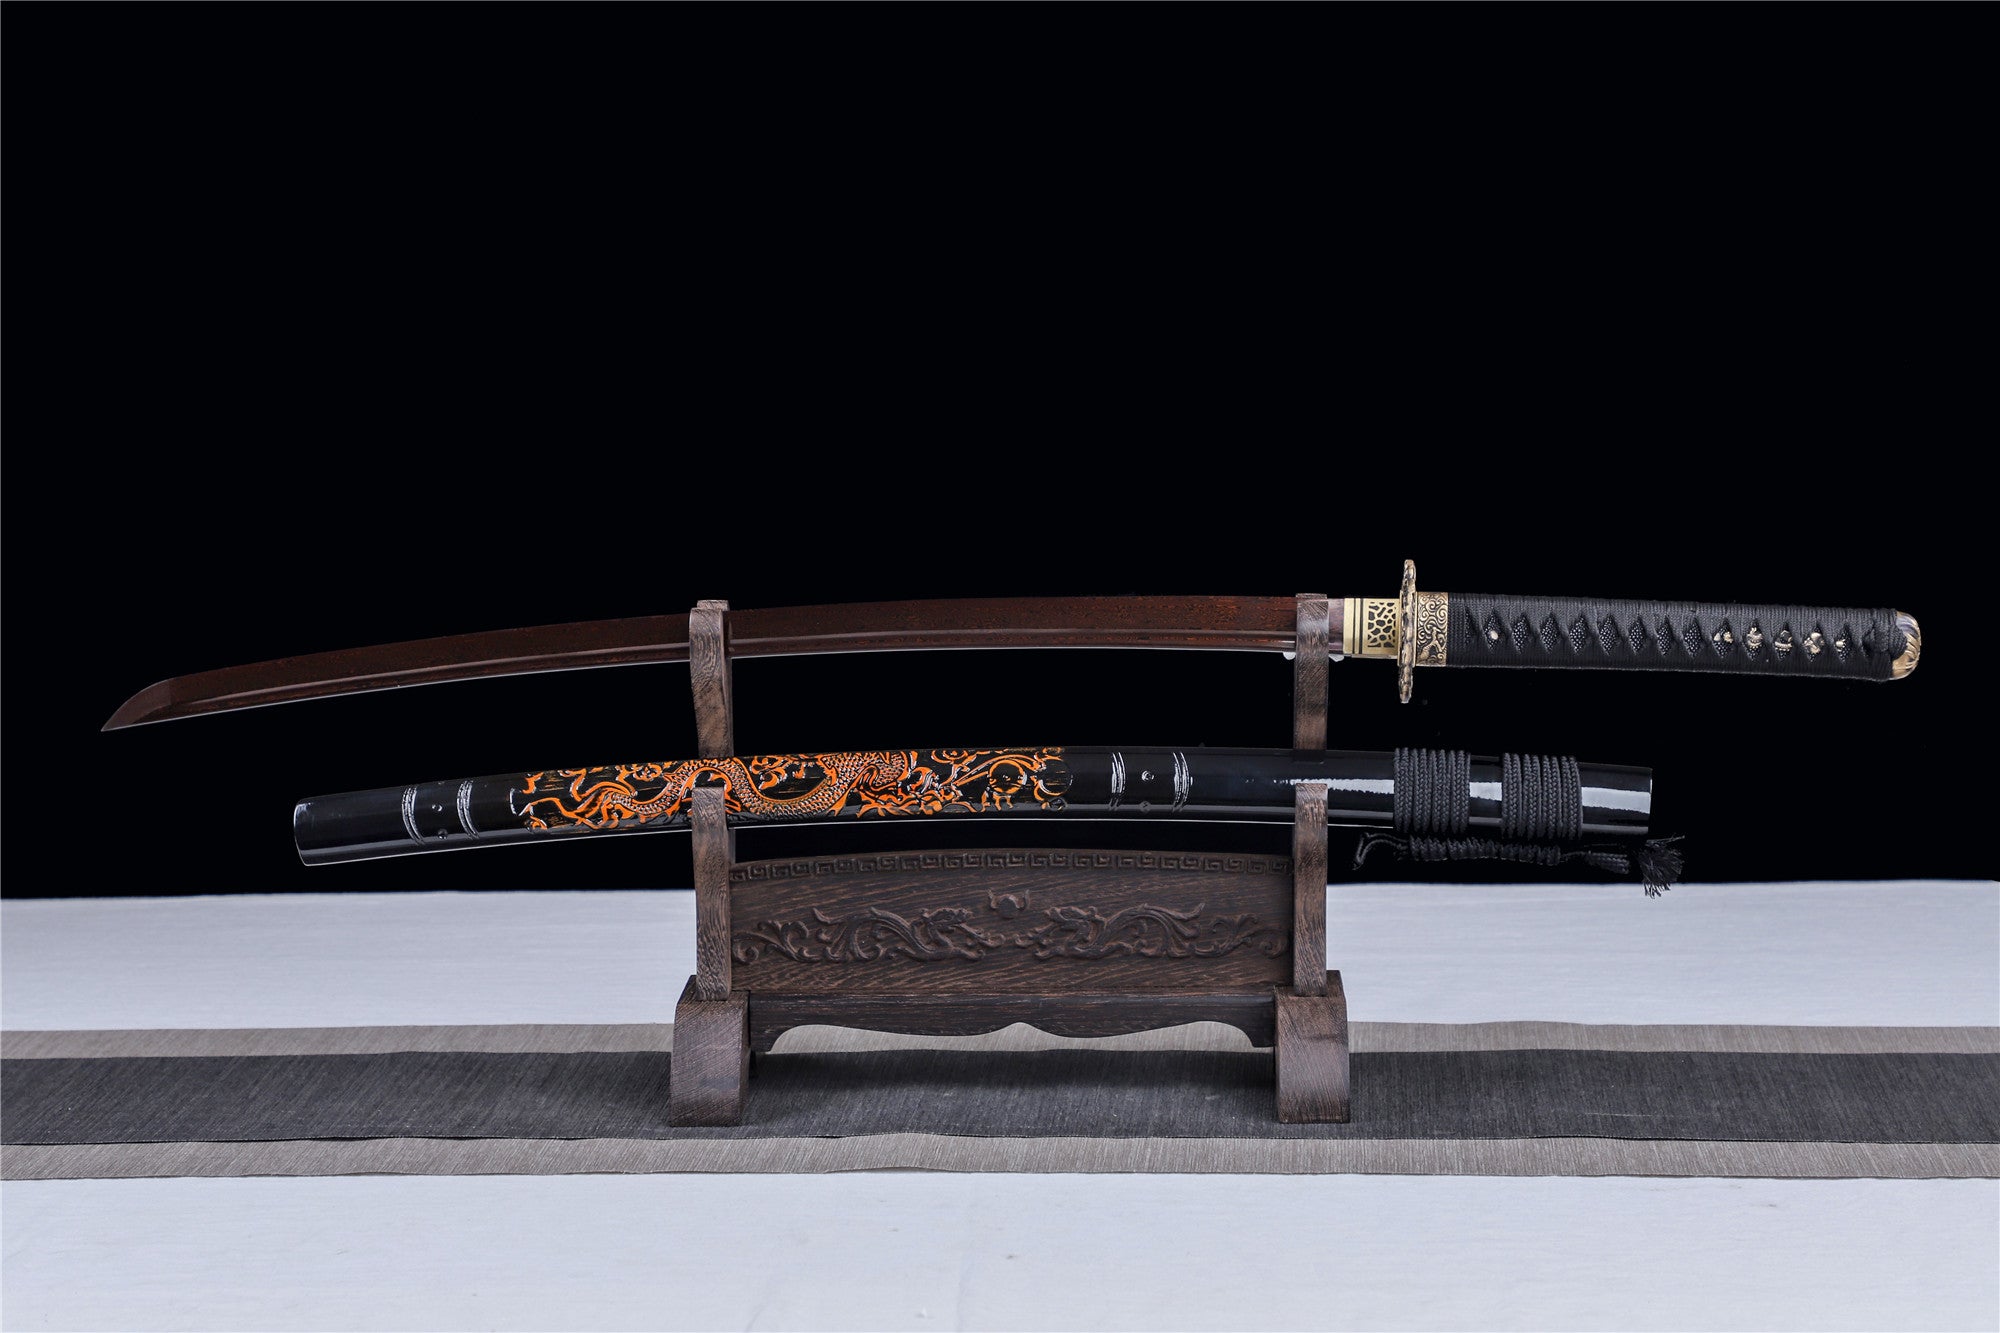 Fire Dragon King Katana, gebackene rote Serie, japanisches Samurai-Schwert, echtes Katana, handgefertigtes Schwert, Hochleistungsmusterstahl, Longquan-Schwert